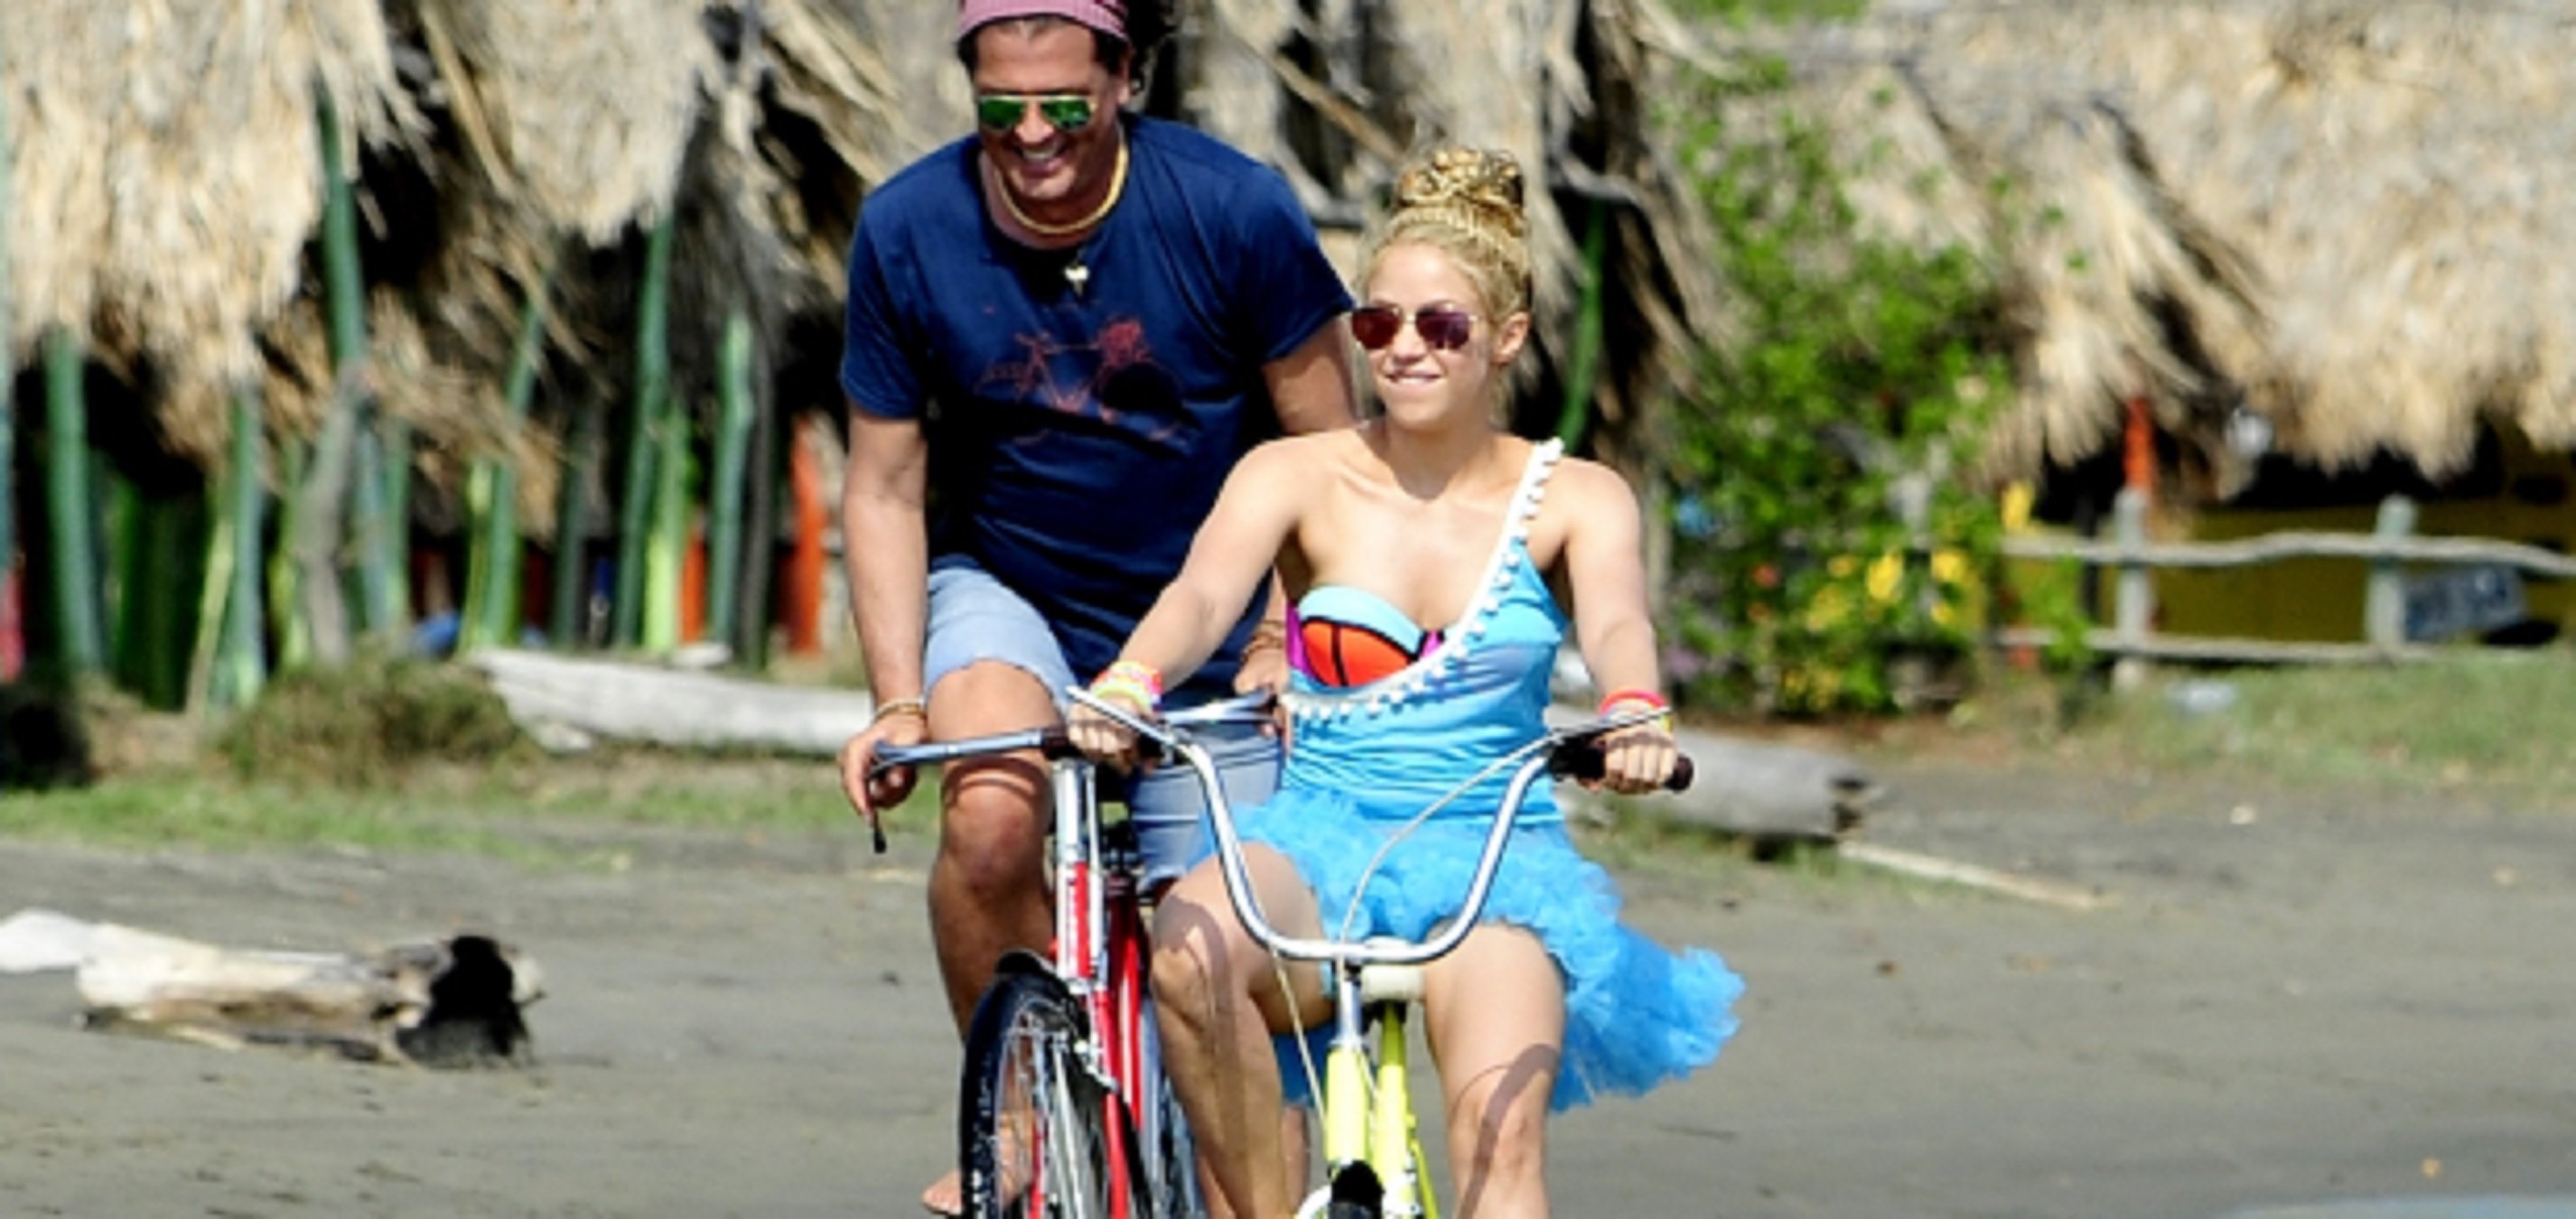 Carlos Vives, cantant de 'La Bicicleta' amb Shakira, traeix la colombiana: prova demolidora